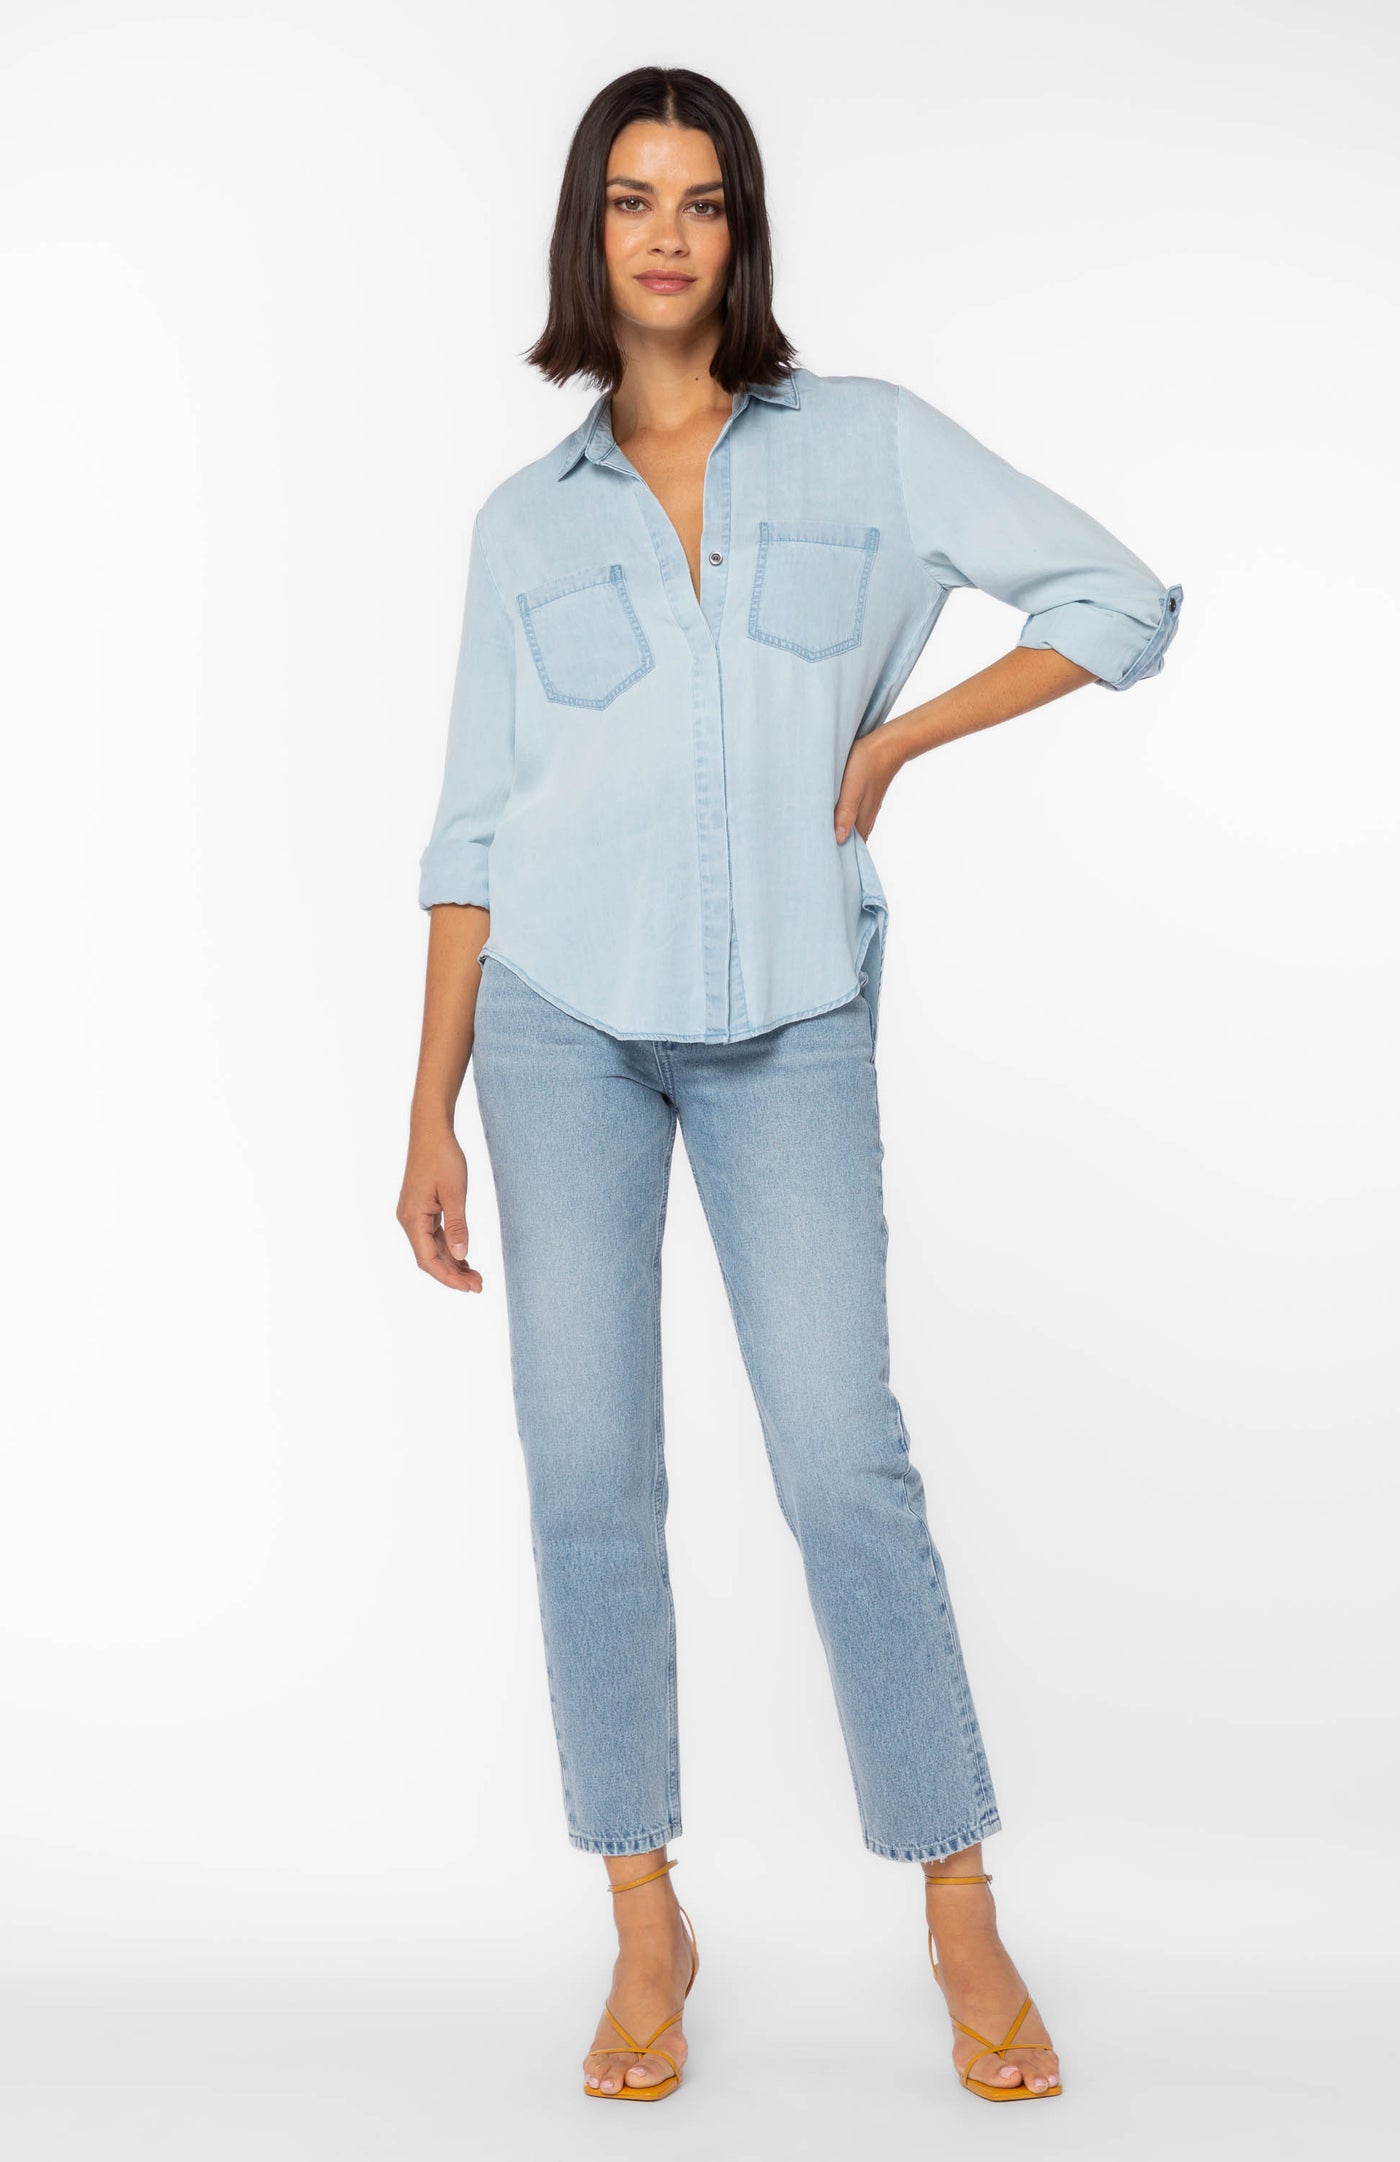 Riley Blue Sanded Shirt - Tops - Velvet Heart Clothing